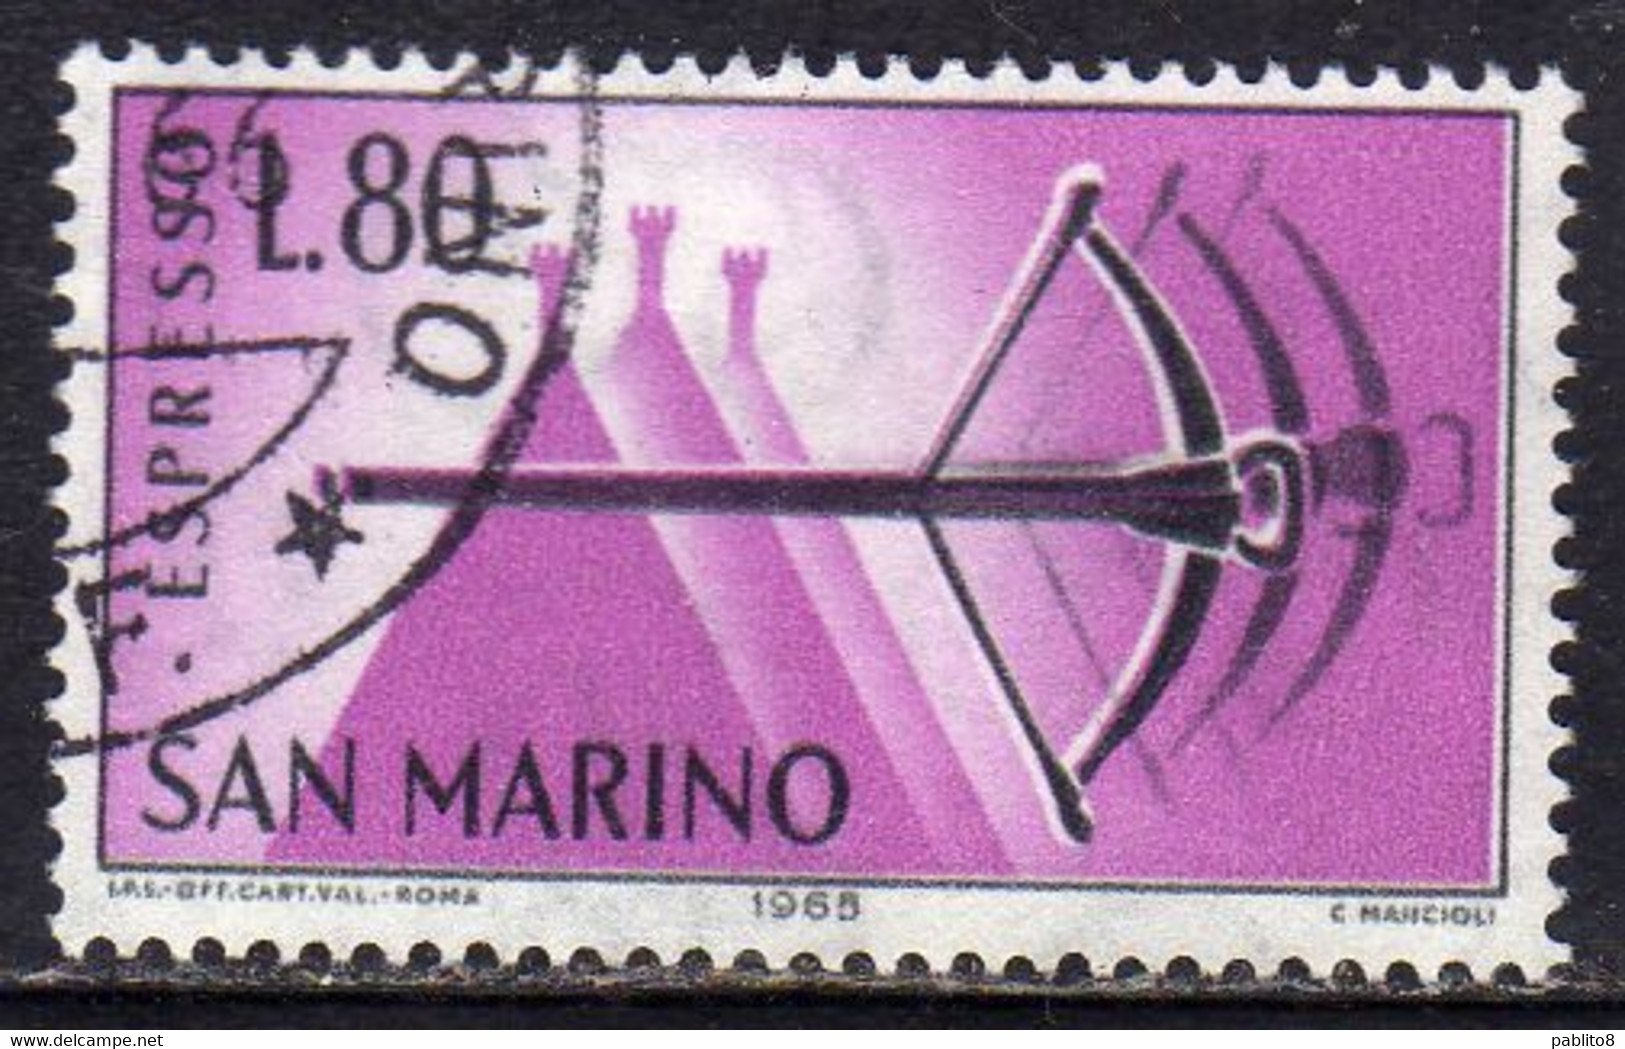 REPUBBLICA DI SAN MARINO 1966 ESPRESSI SPECIAL DELIVERY ESPRESSO BALESTRA LIRE 80 USATO USED OBLITERE' - Eilpost